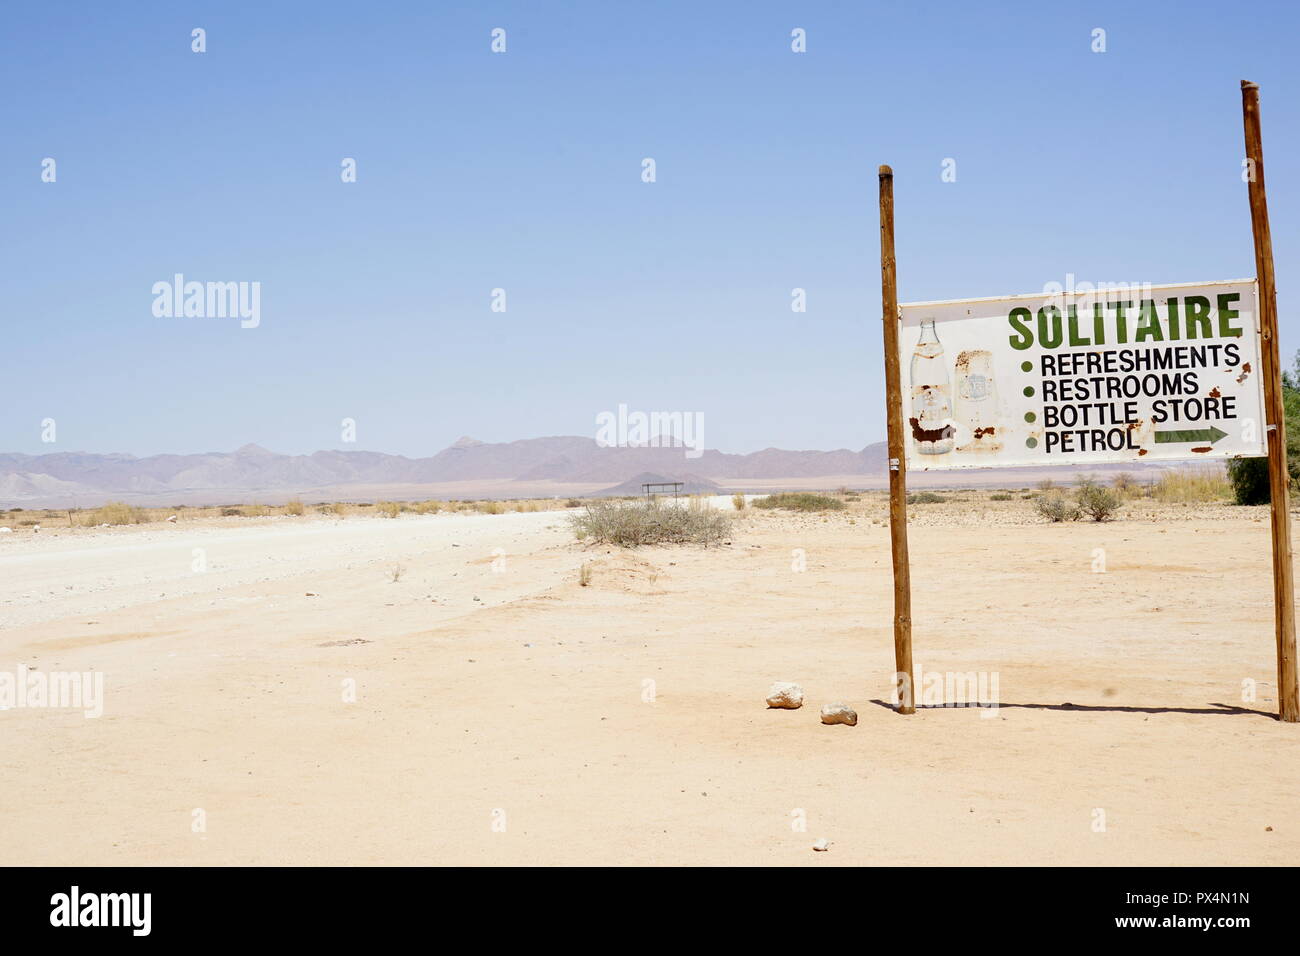 Solitaire, Hinweisschild, Raststätte an der C14 et C24, la Namibie, Afrika Banque D'Images